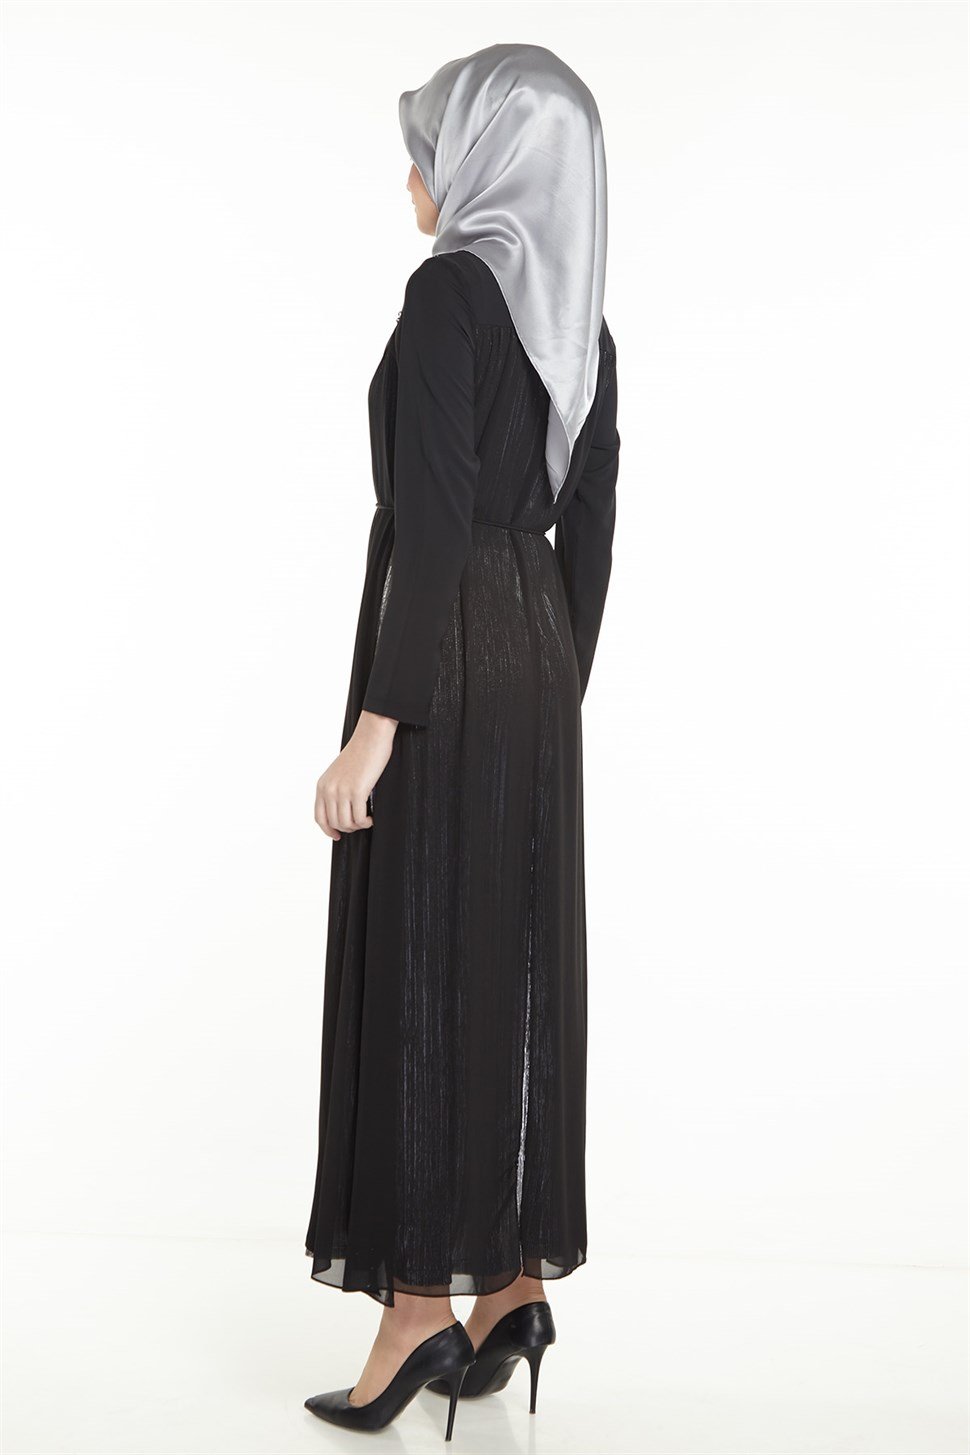 Armine Şifon Detaylı Elbise 8Y9571 Siyah - ARMİNE | Hayatınıza Artı Değer  Katar!